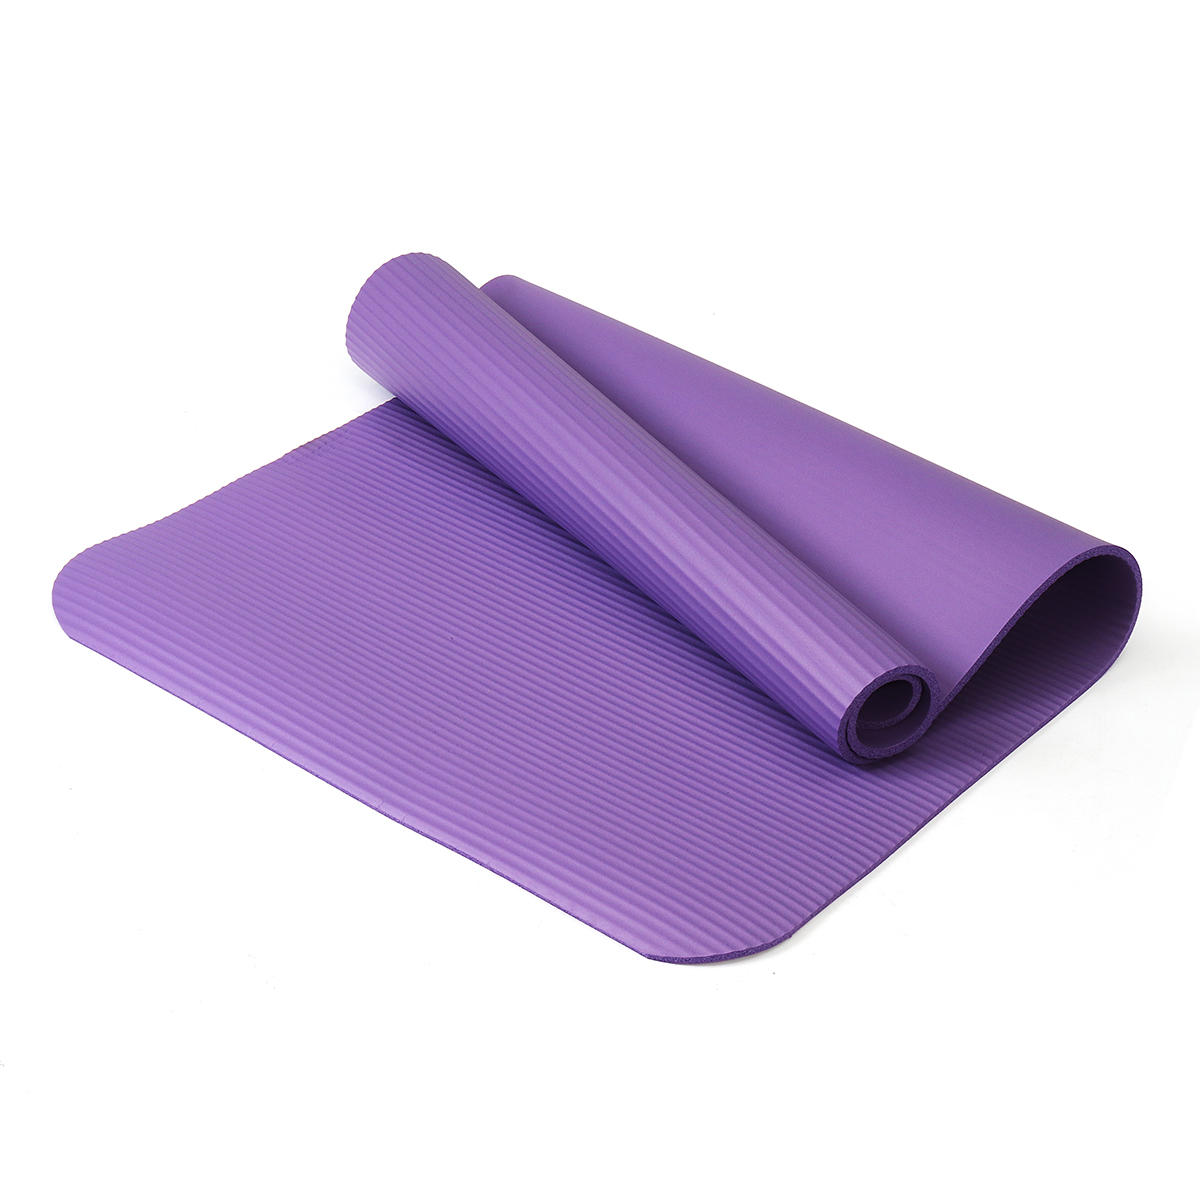 Kaload 1200x610x10mm yoga mats outdoor 